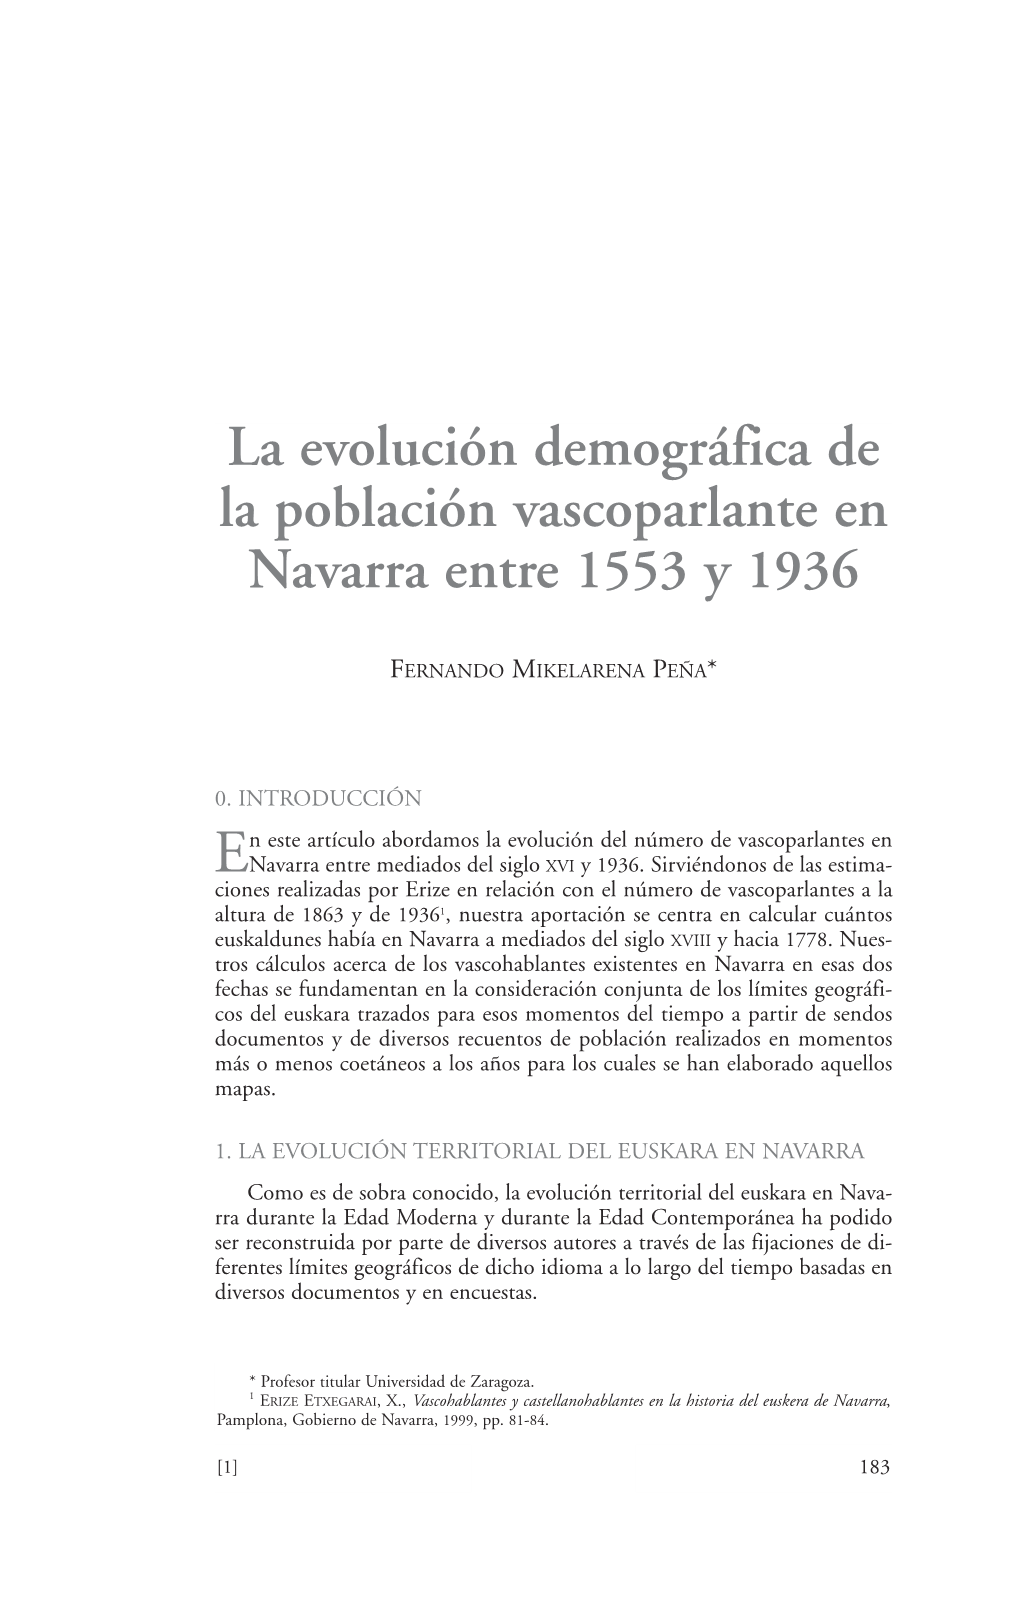 La Evolución Demográfica De La Población Vascoparlante En Navarra Entre 1553 Y 1936